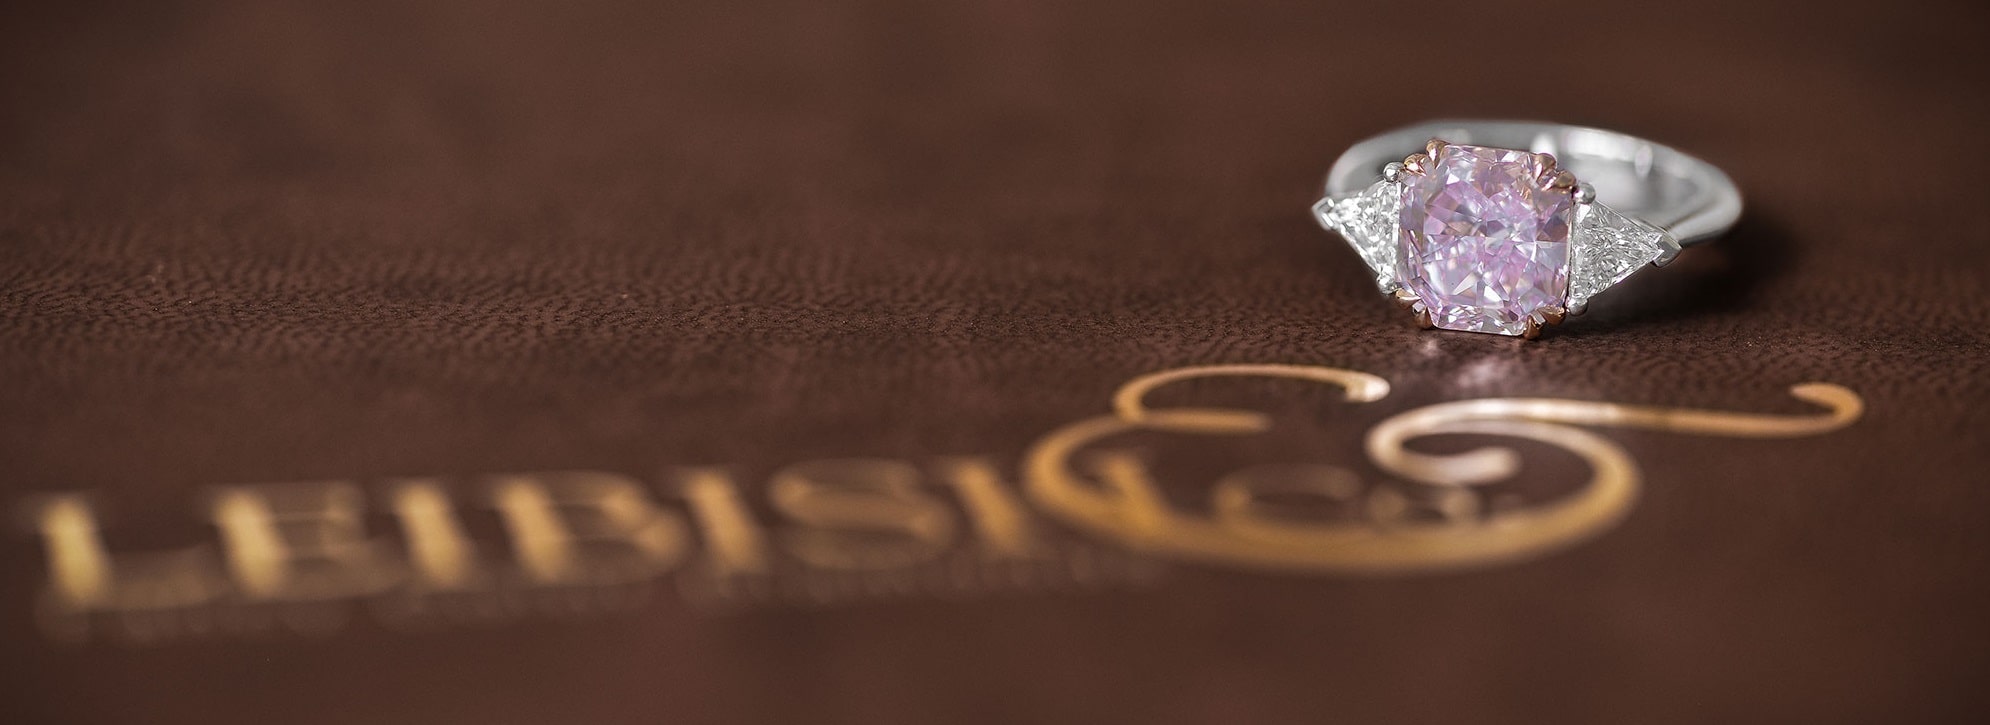 Leibish & Co. 3.61 ct Fancy Purplish Pink Radiant Diamond Ring